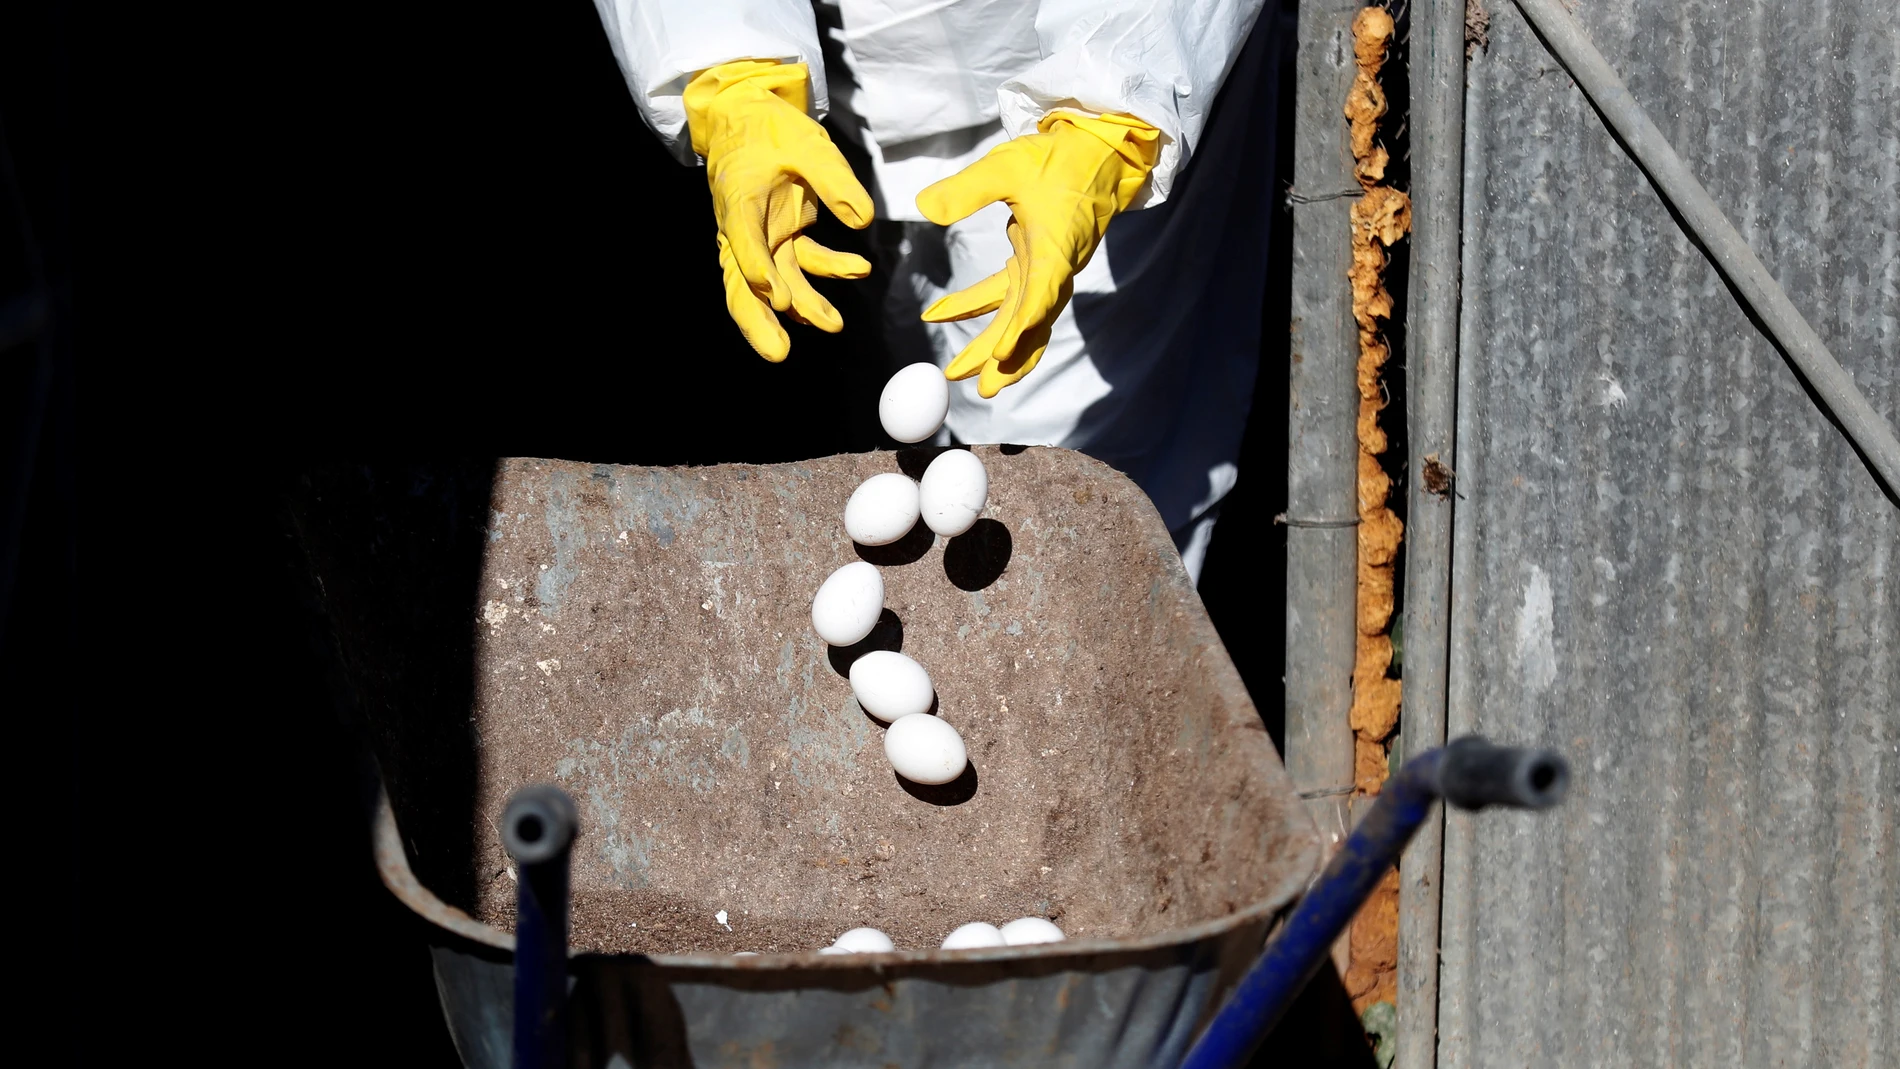 Trabajadores desechando huevos de gallina en una granja en una imagen de archivo. EFE/Atef Safadi